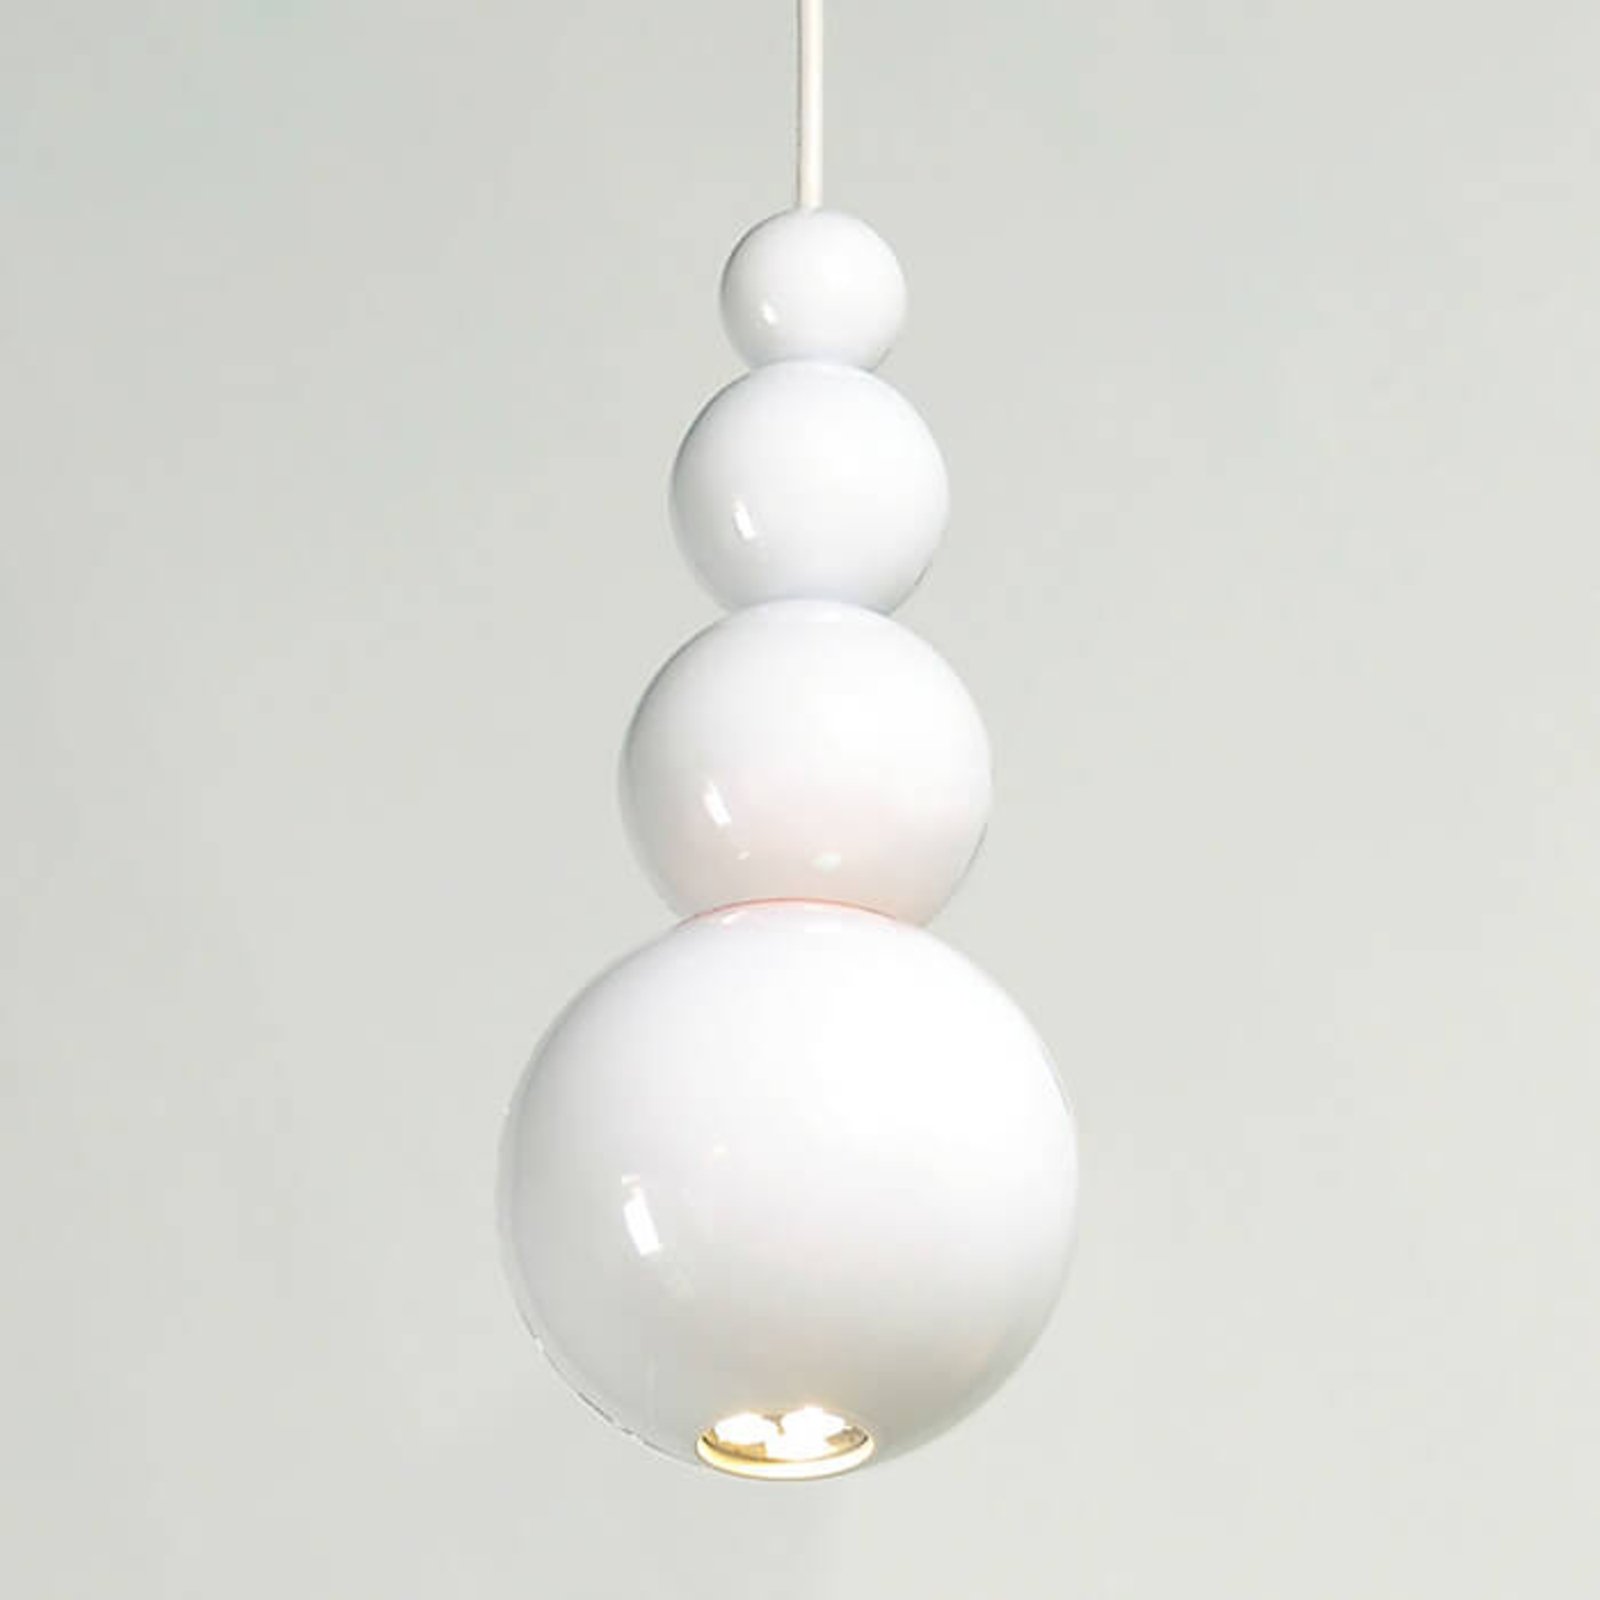 Innermost Bubble - sospensione in bianco